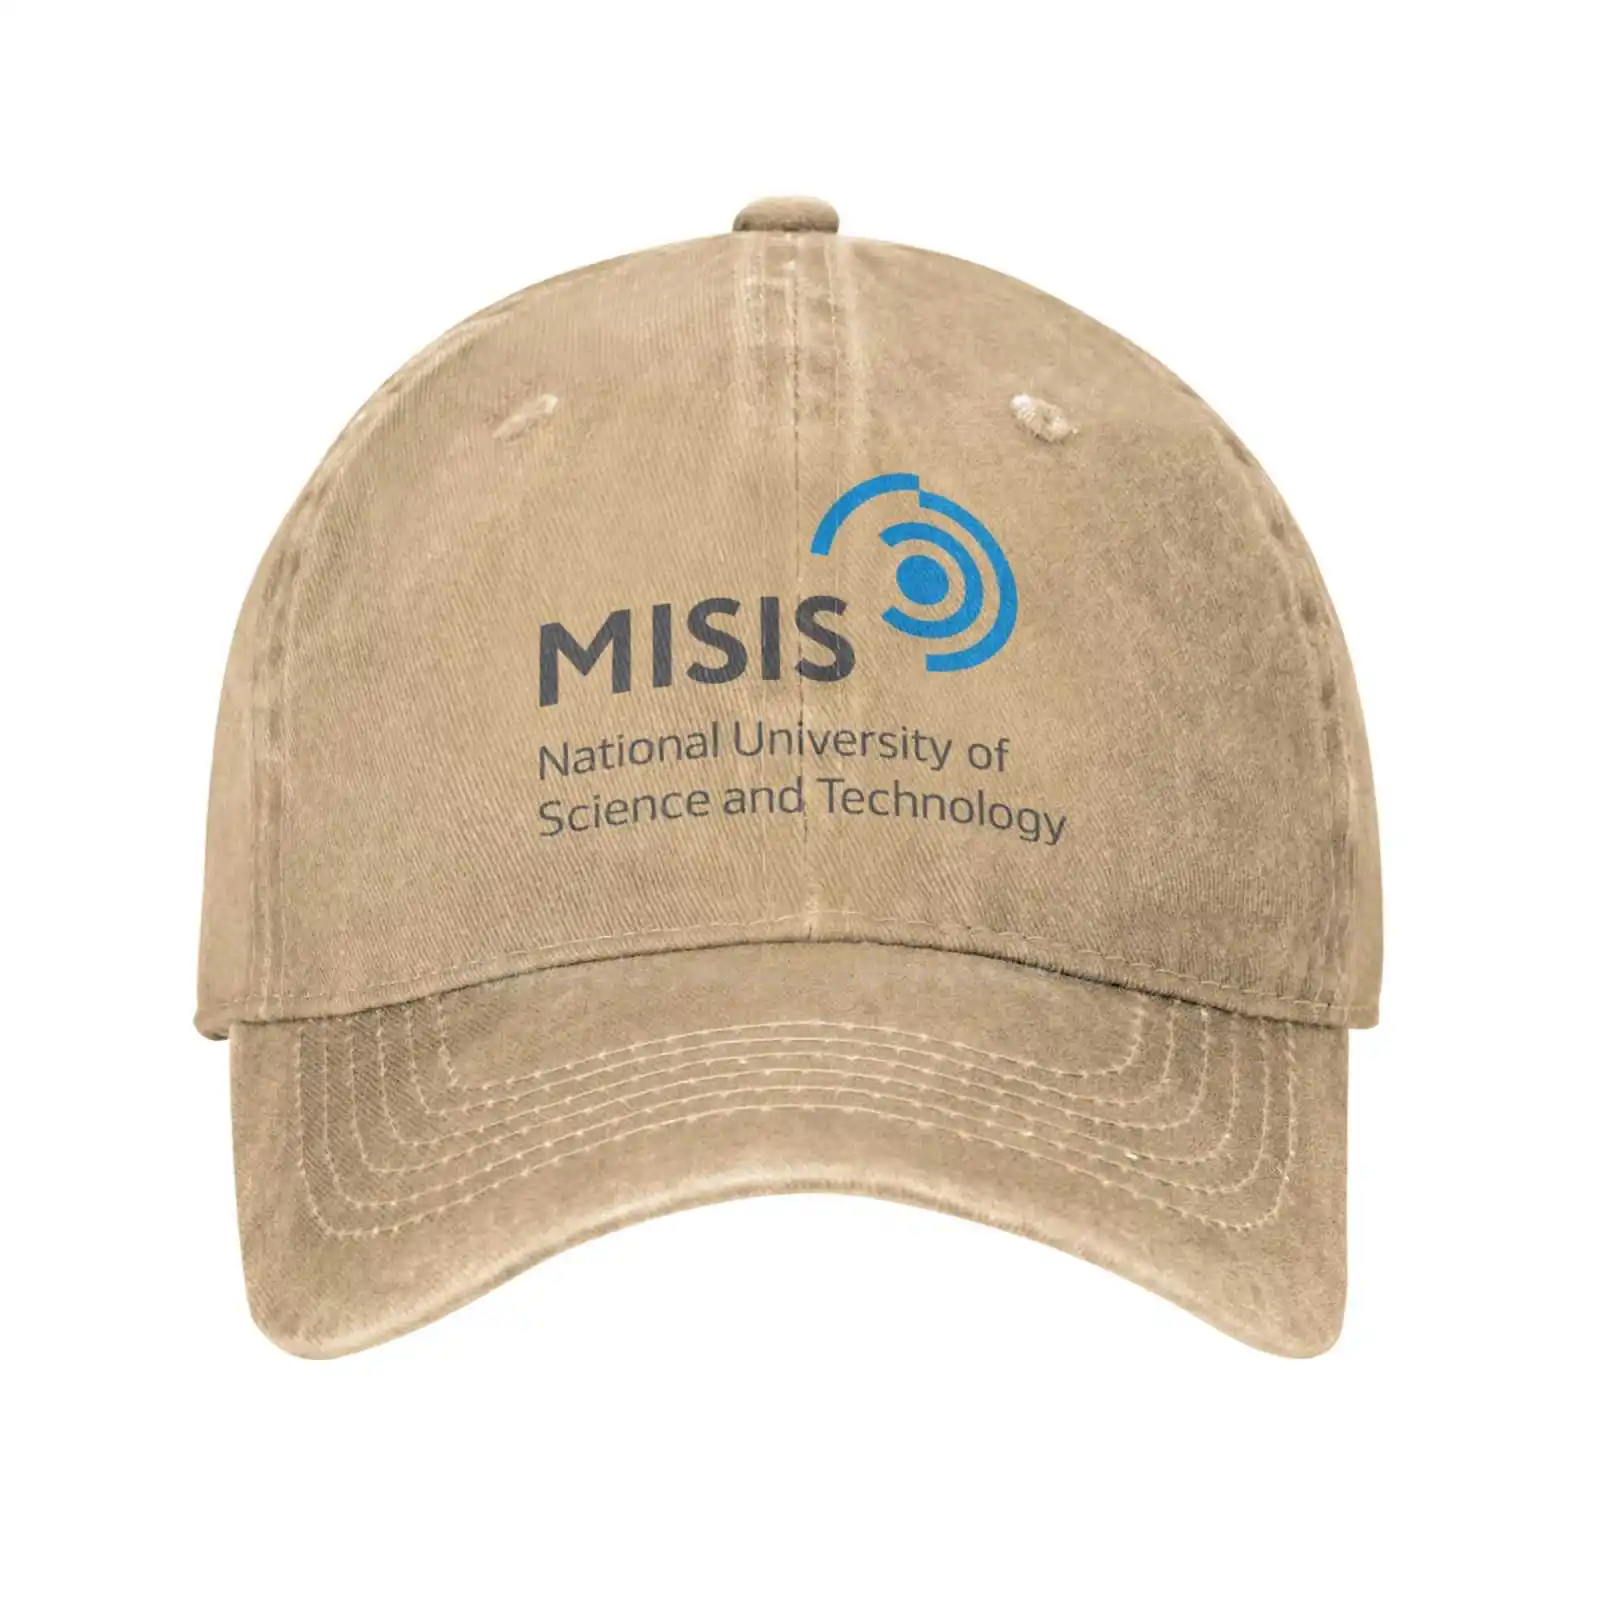 

Модная качественная джинсовая бейсболка с логотипом национального университета науки и технологии MISiS